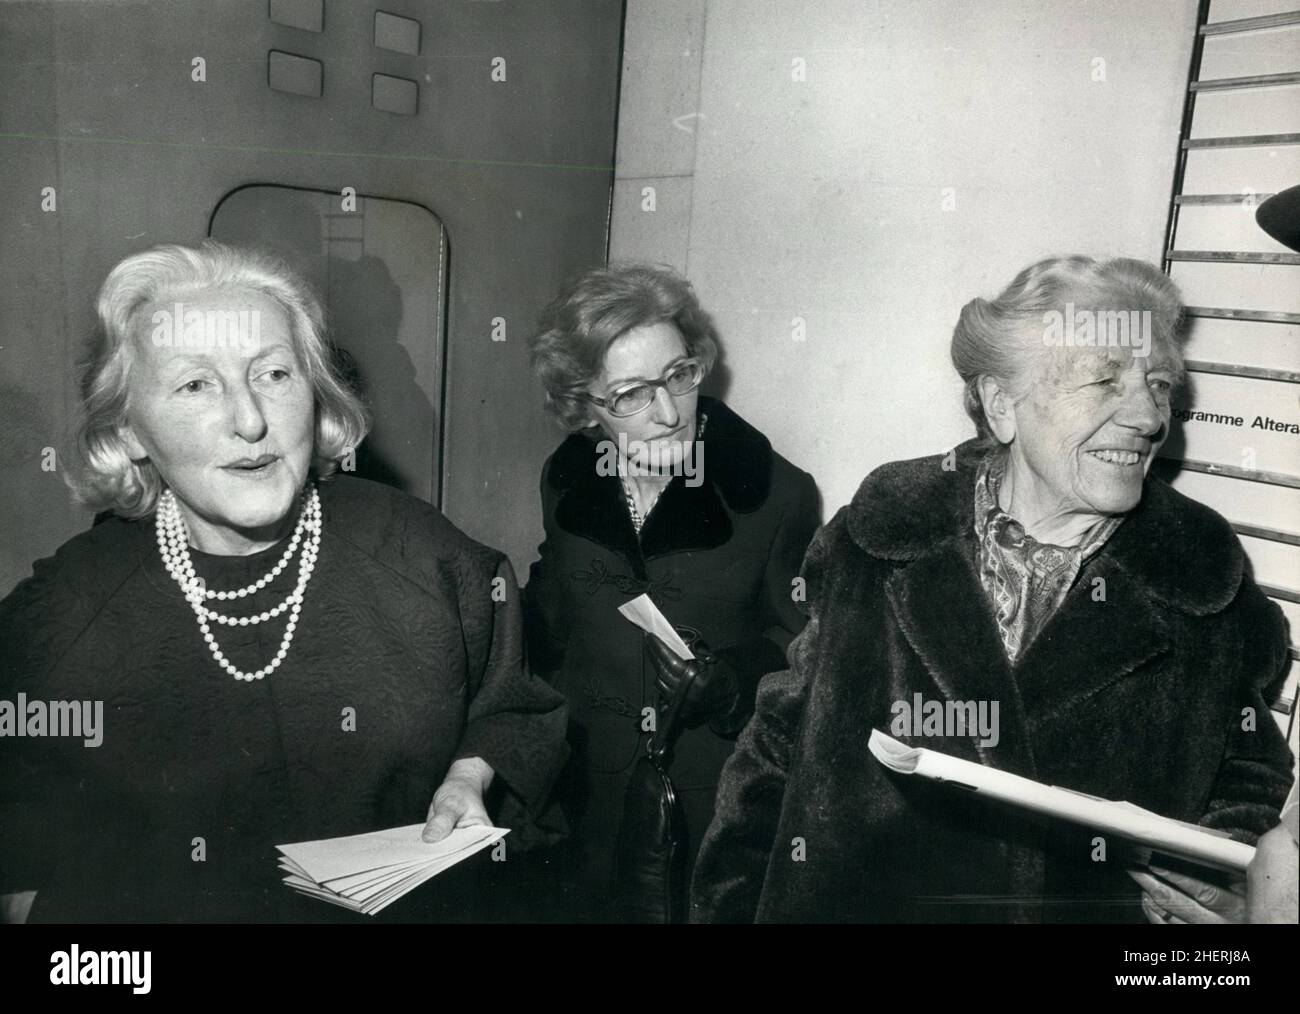 11 novembre 1975 - Londres, Angleterre, Royaume-Uni - la famille Wagner a eu une rare réunion à Londres hier soir pour entendre une performance de l'un des opéras moins connus 'Der Friedensengel'.Mme WINIFRED WAGNER, veuve de S. Wagner, avec ses filles, Mlle FRIEDELIND WAGNER (à gauche) et Mme BERENA LAFFERENTZ, au centre, lors de la représentation hier soir.(Image de crédit : © Keystone Press Agency/ZUMA Wire) Banque D'Images